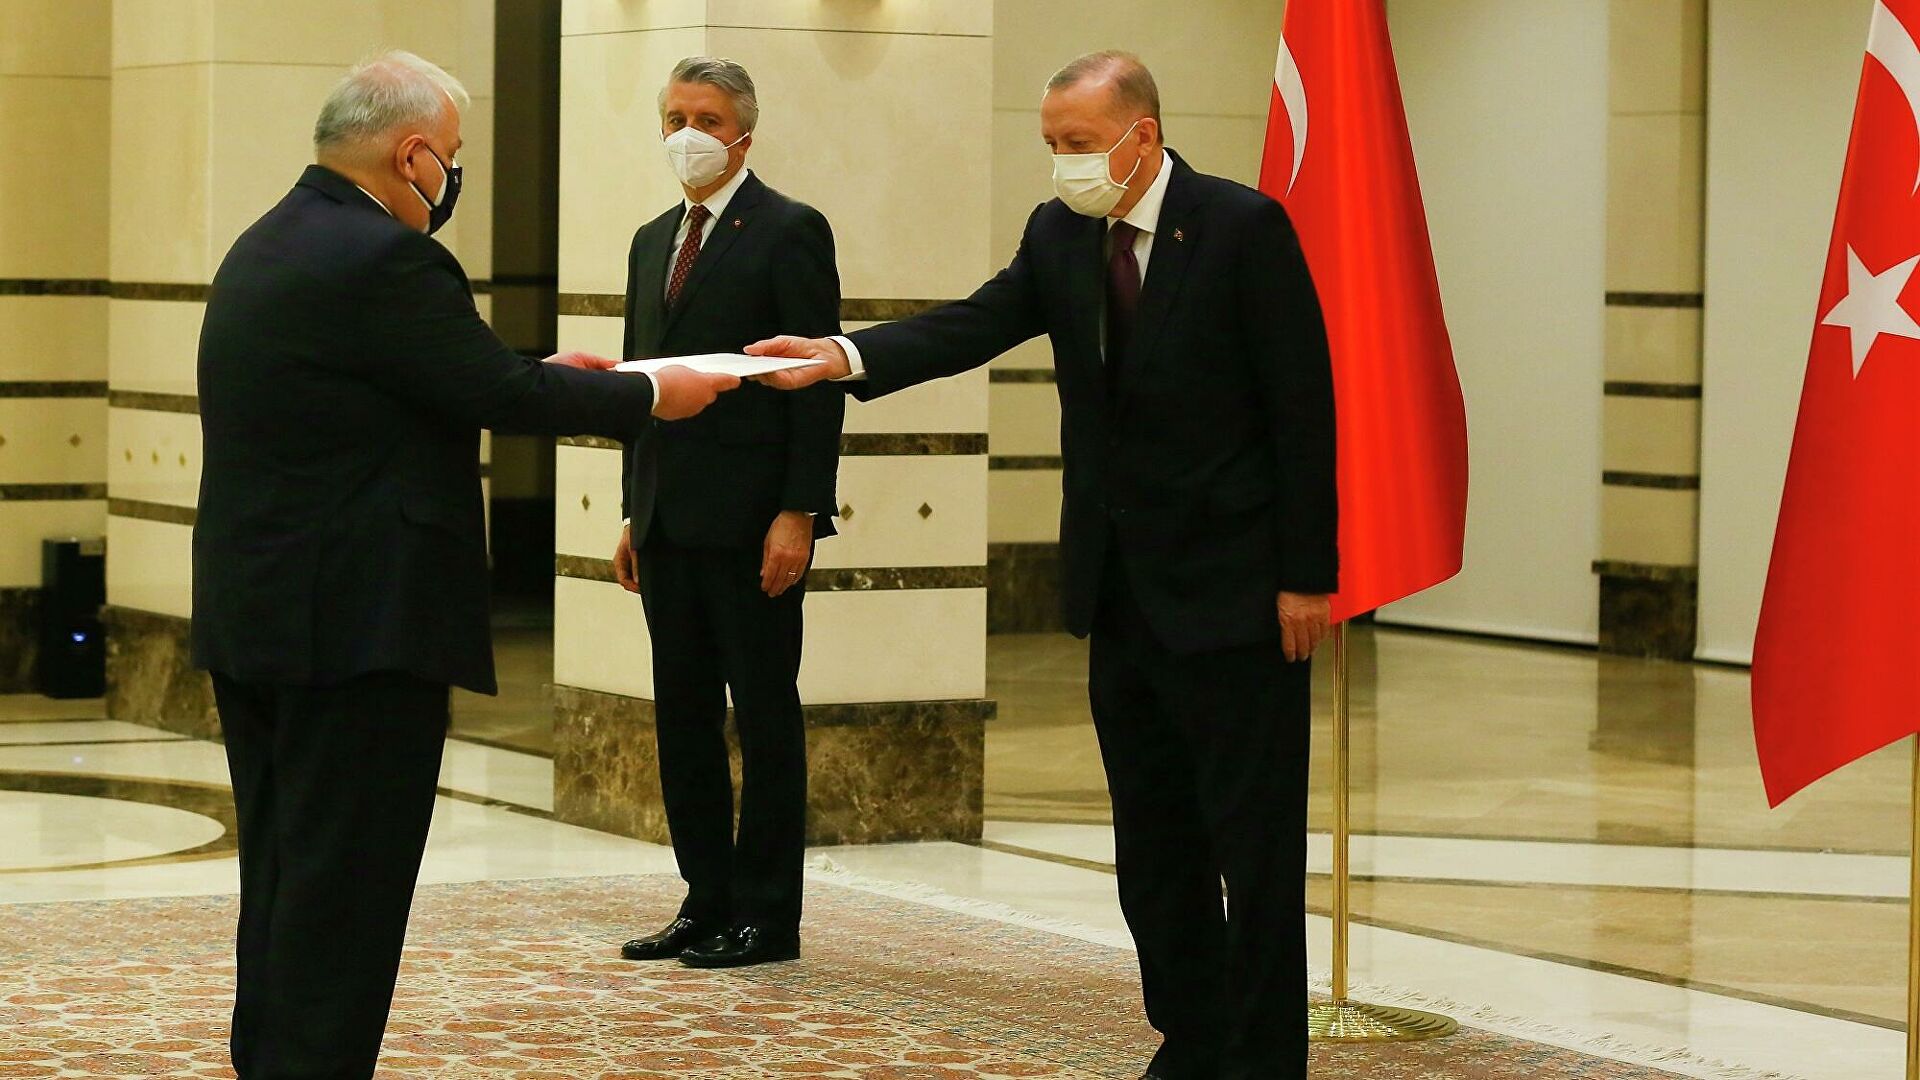 Yunanistan Büyükelçisi Lazaris, Cumhurbaşkanı Erdoğan’a güven mektubu sundu